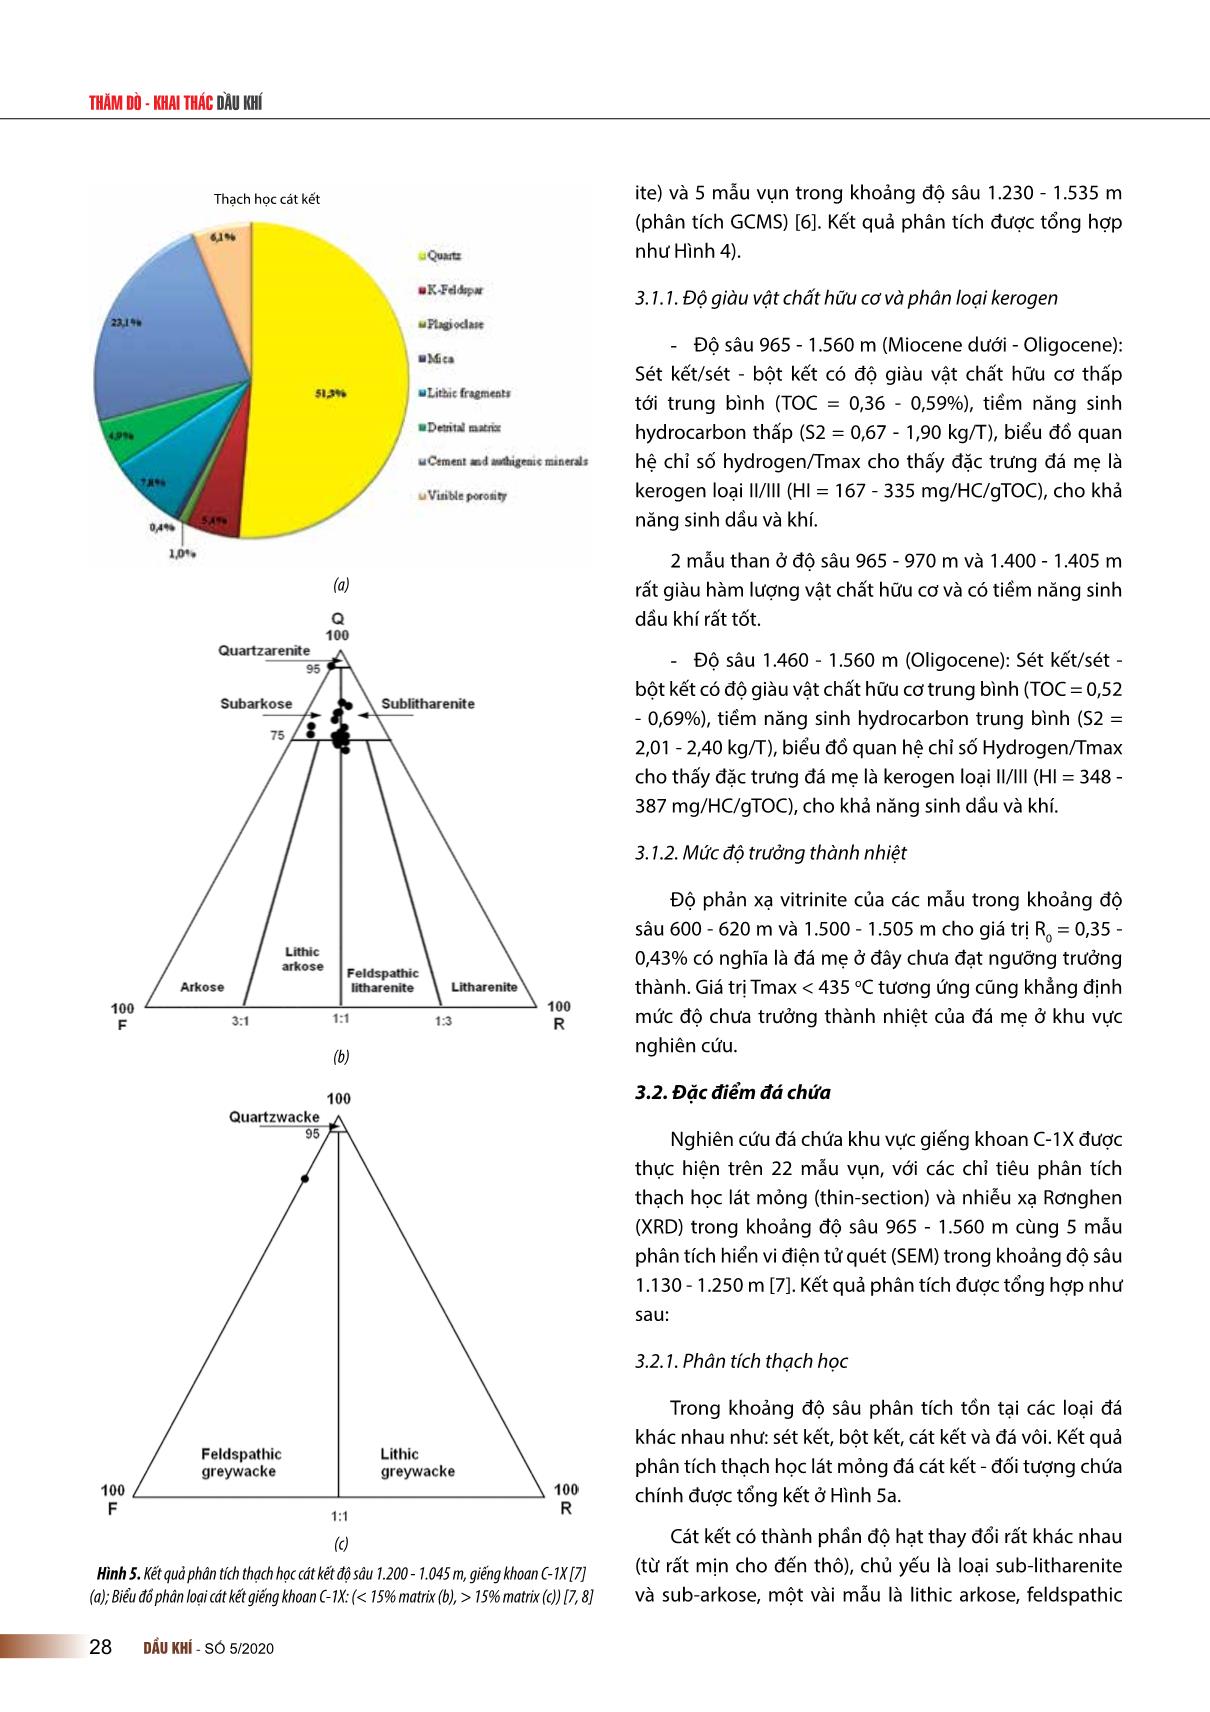 Đặc điểm hệ thống dầu khí khu vực rìa Tây Nam bể trầm tích Malay - Thổ chu, Việt Nam trang 4